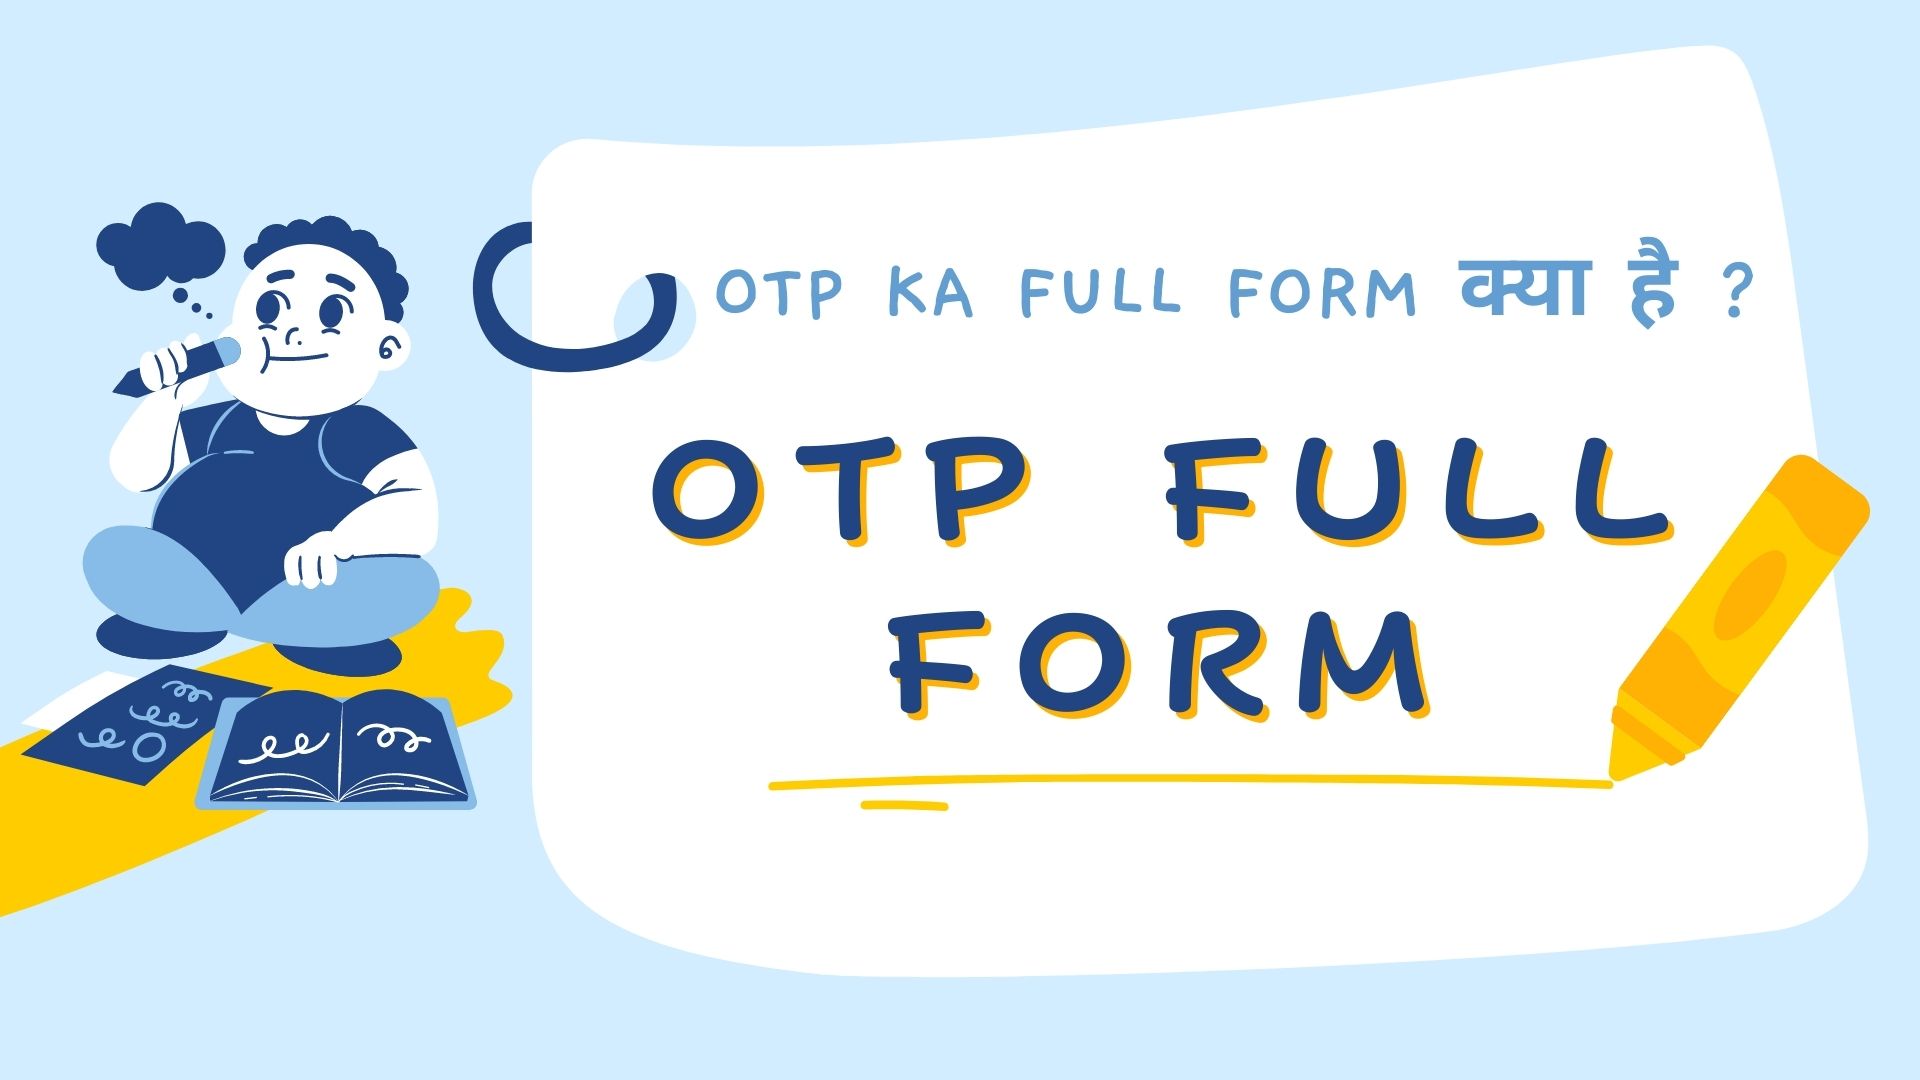 OTP full form